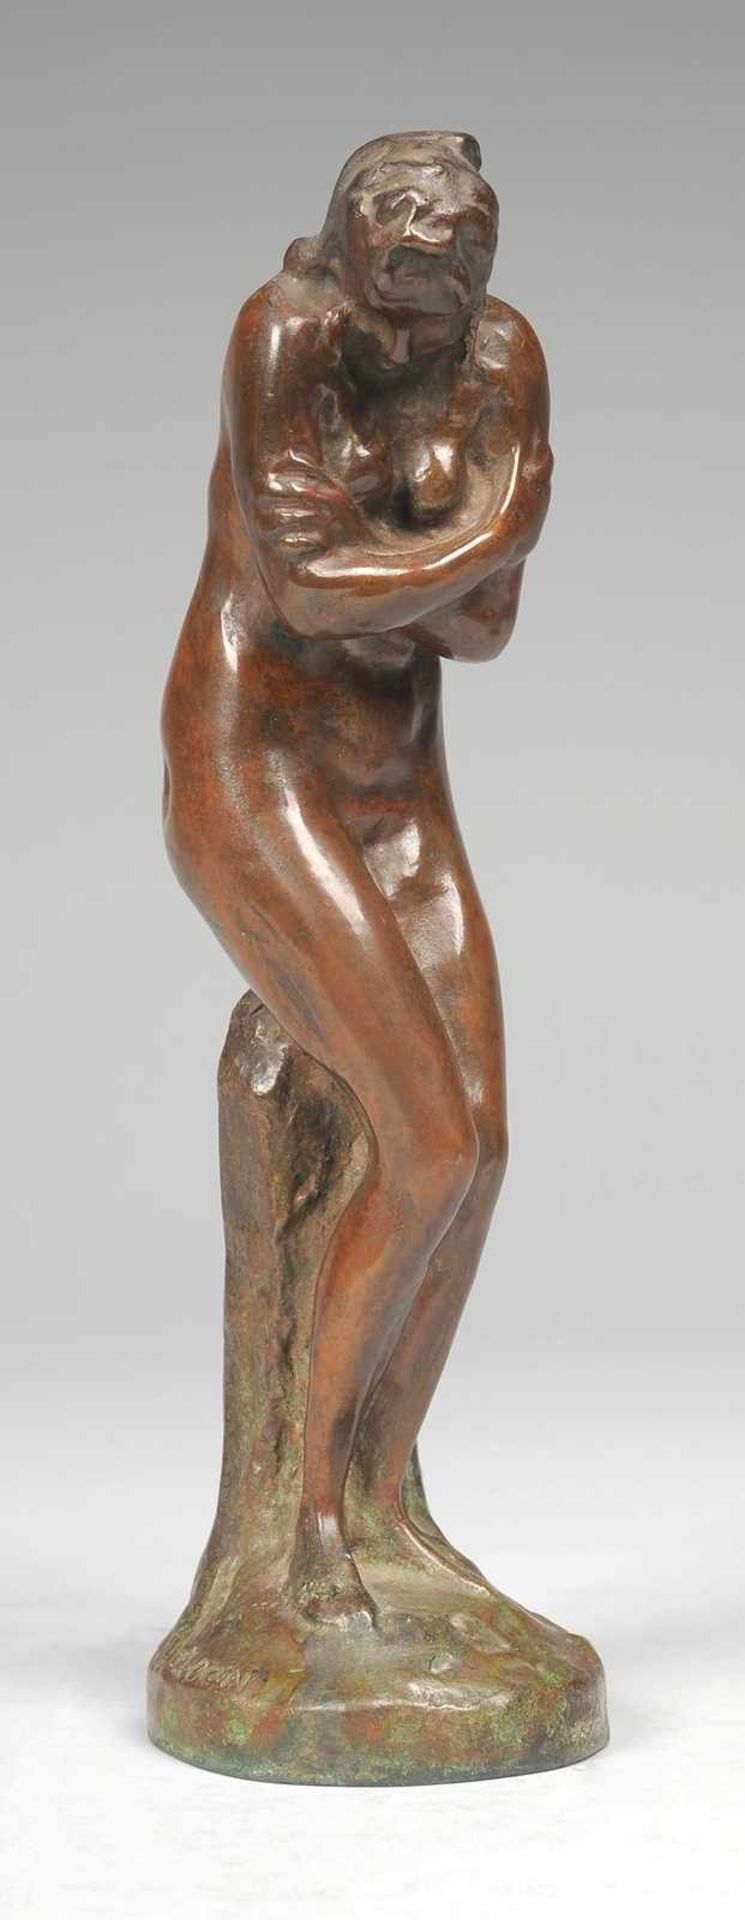 Houdon, Jean Antoine nach (1741 Versailles - 1828 Paris) Bronze, rotbraun bzw. grünbraun